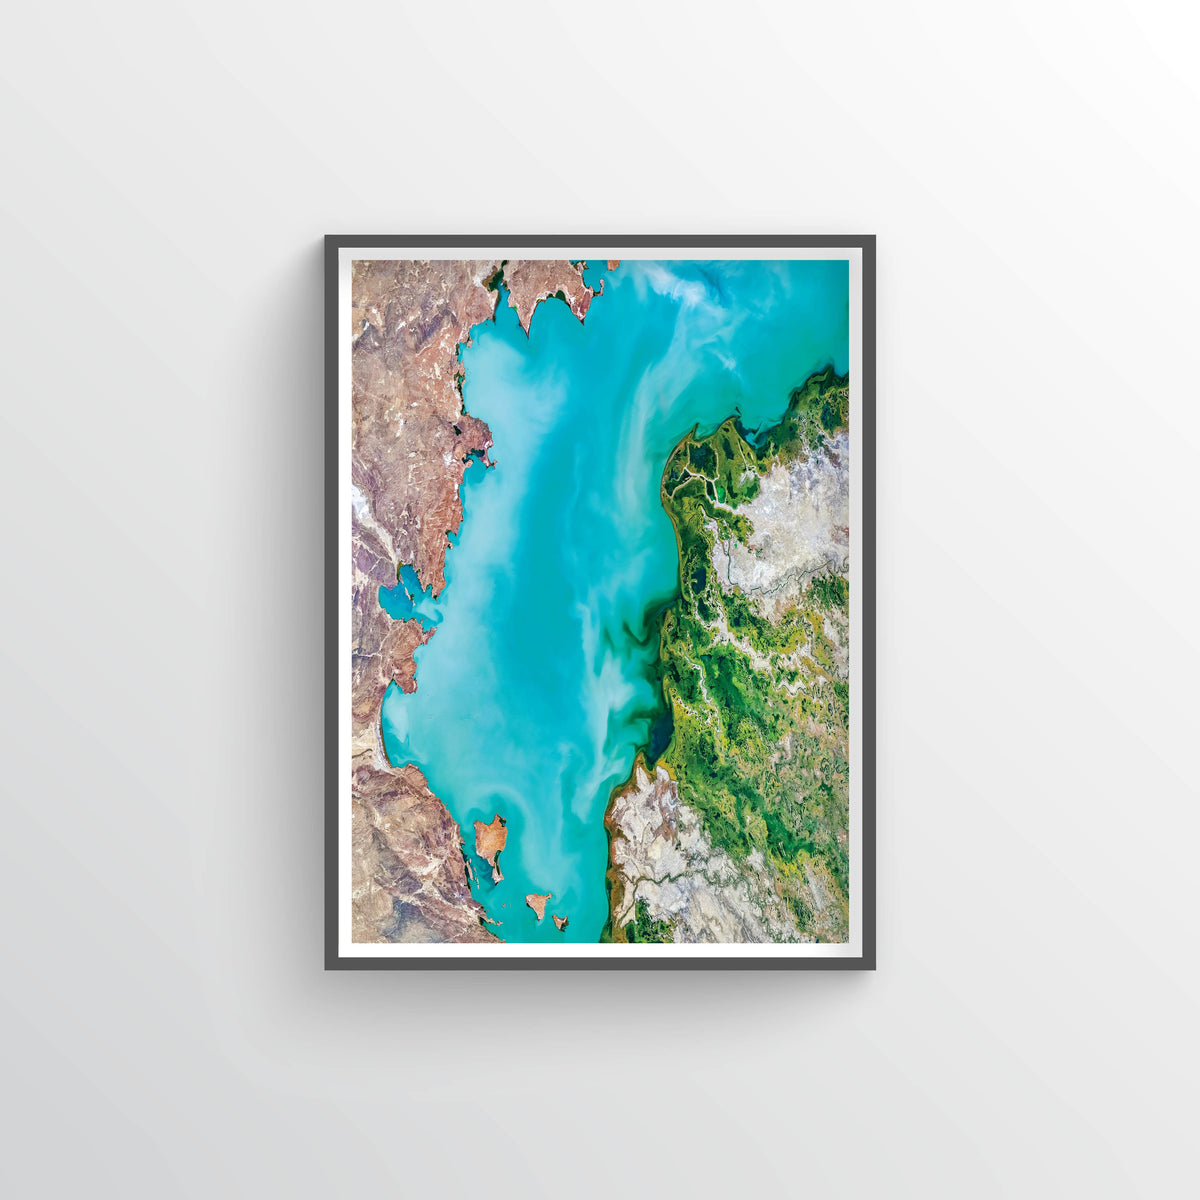 Lake Balkhash Earth Photography - Art Print